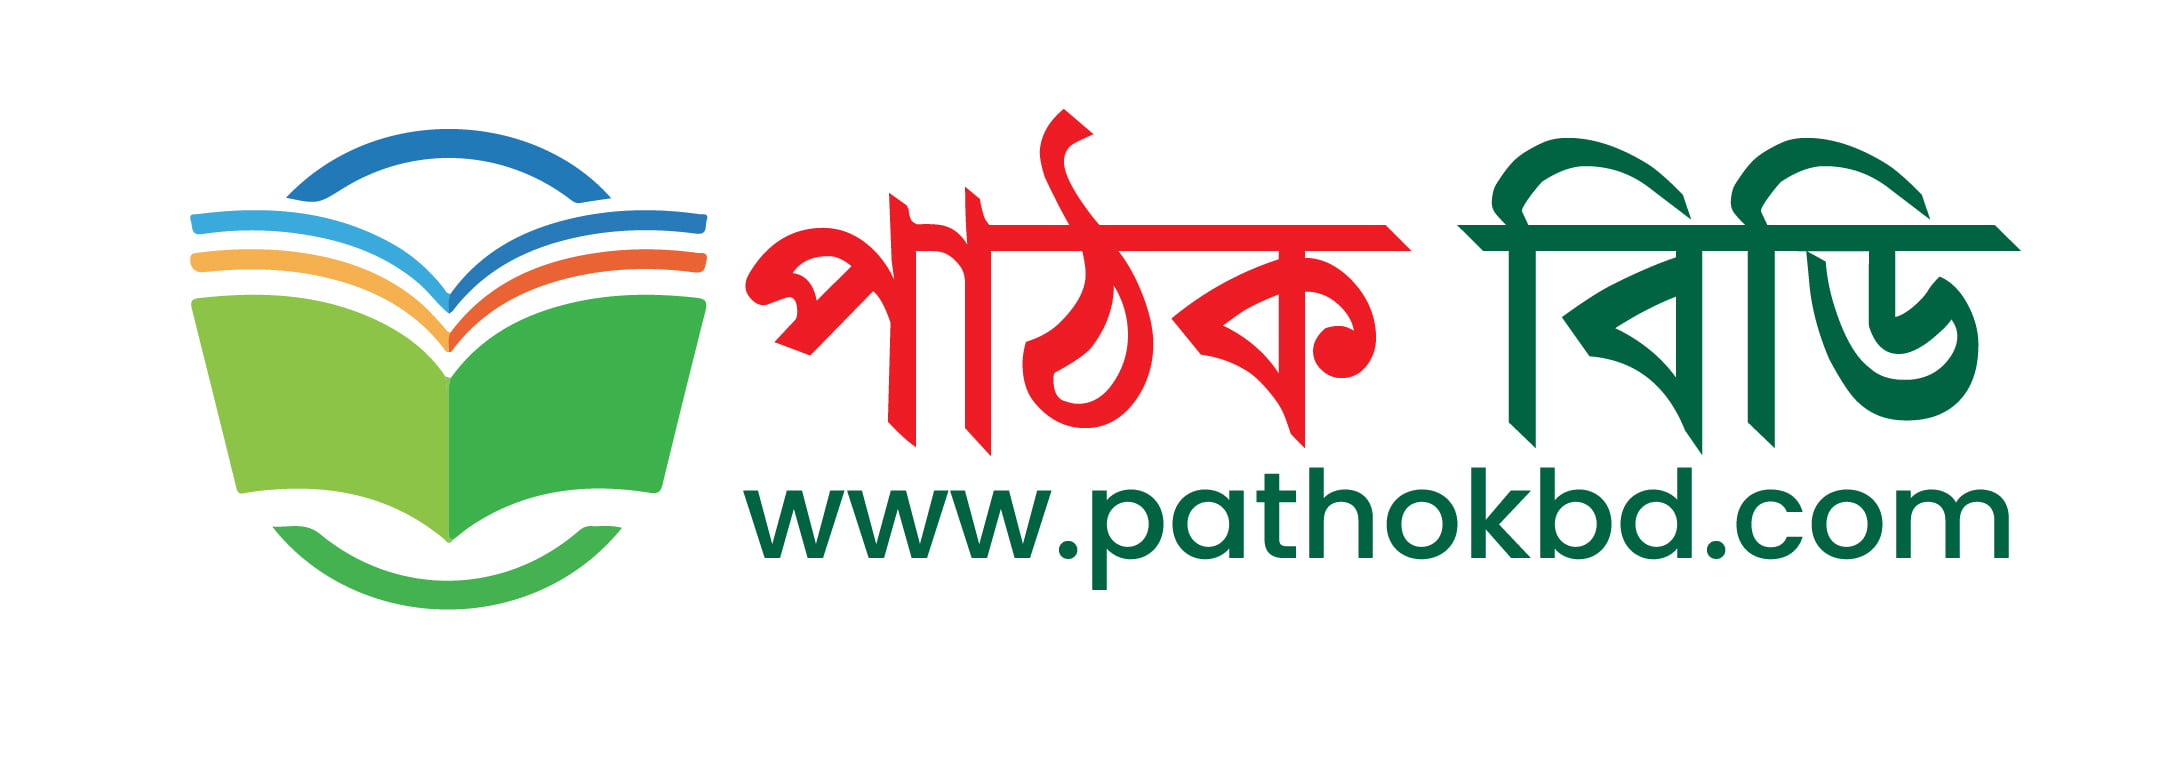 Pathok BD